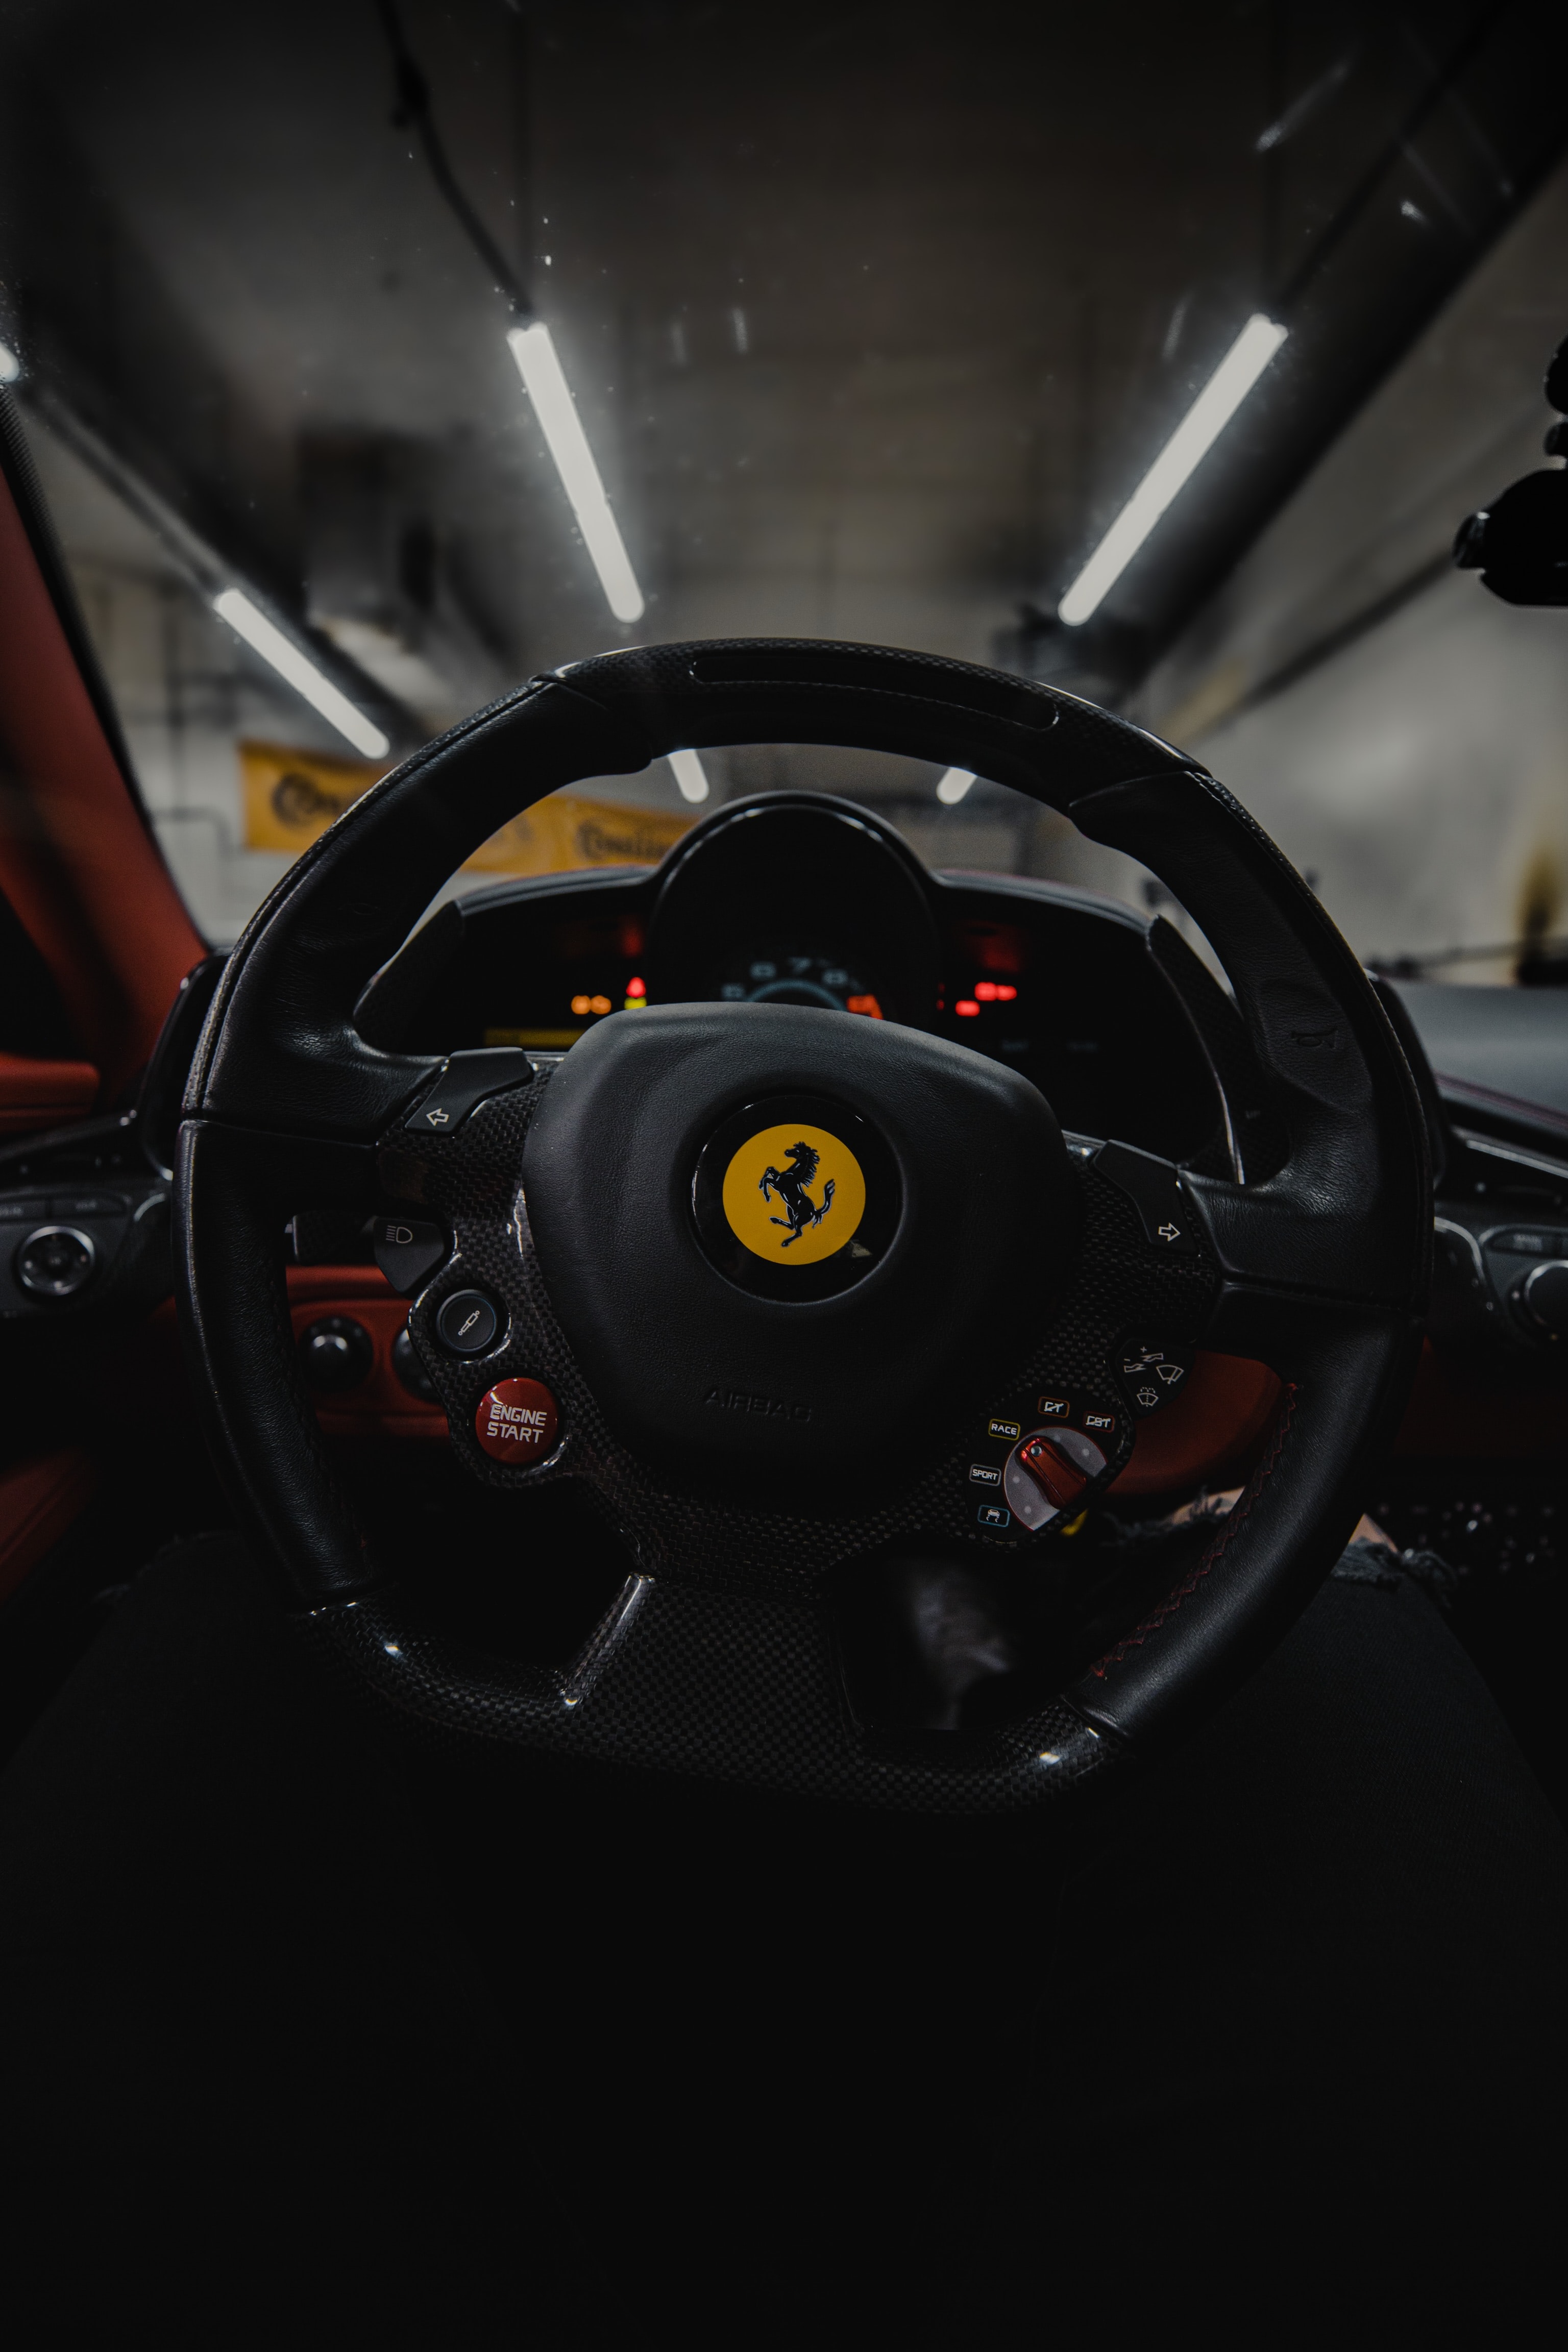 Best Mobile Ferrari Backgrounds